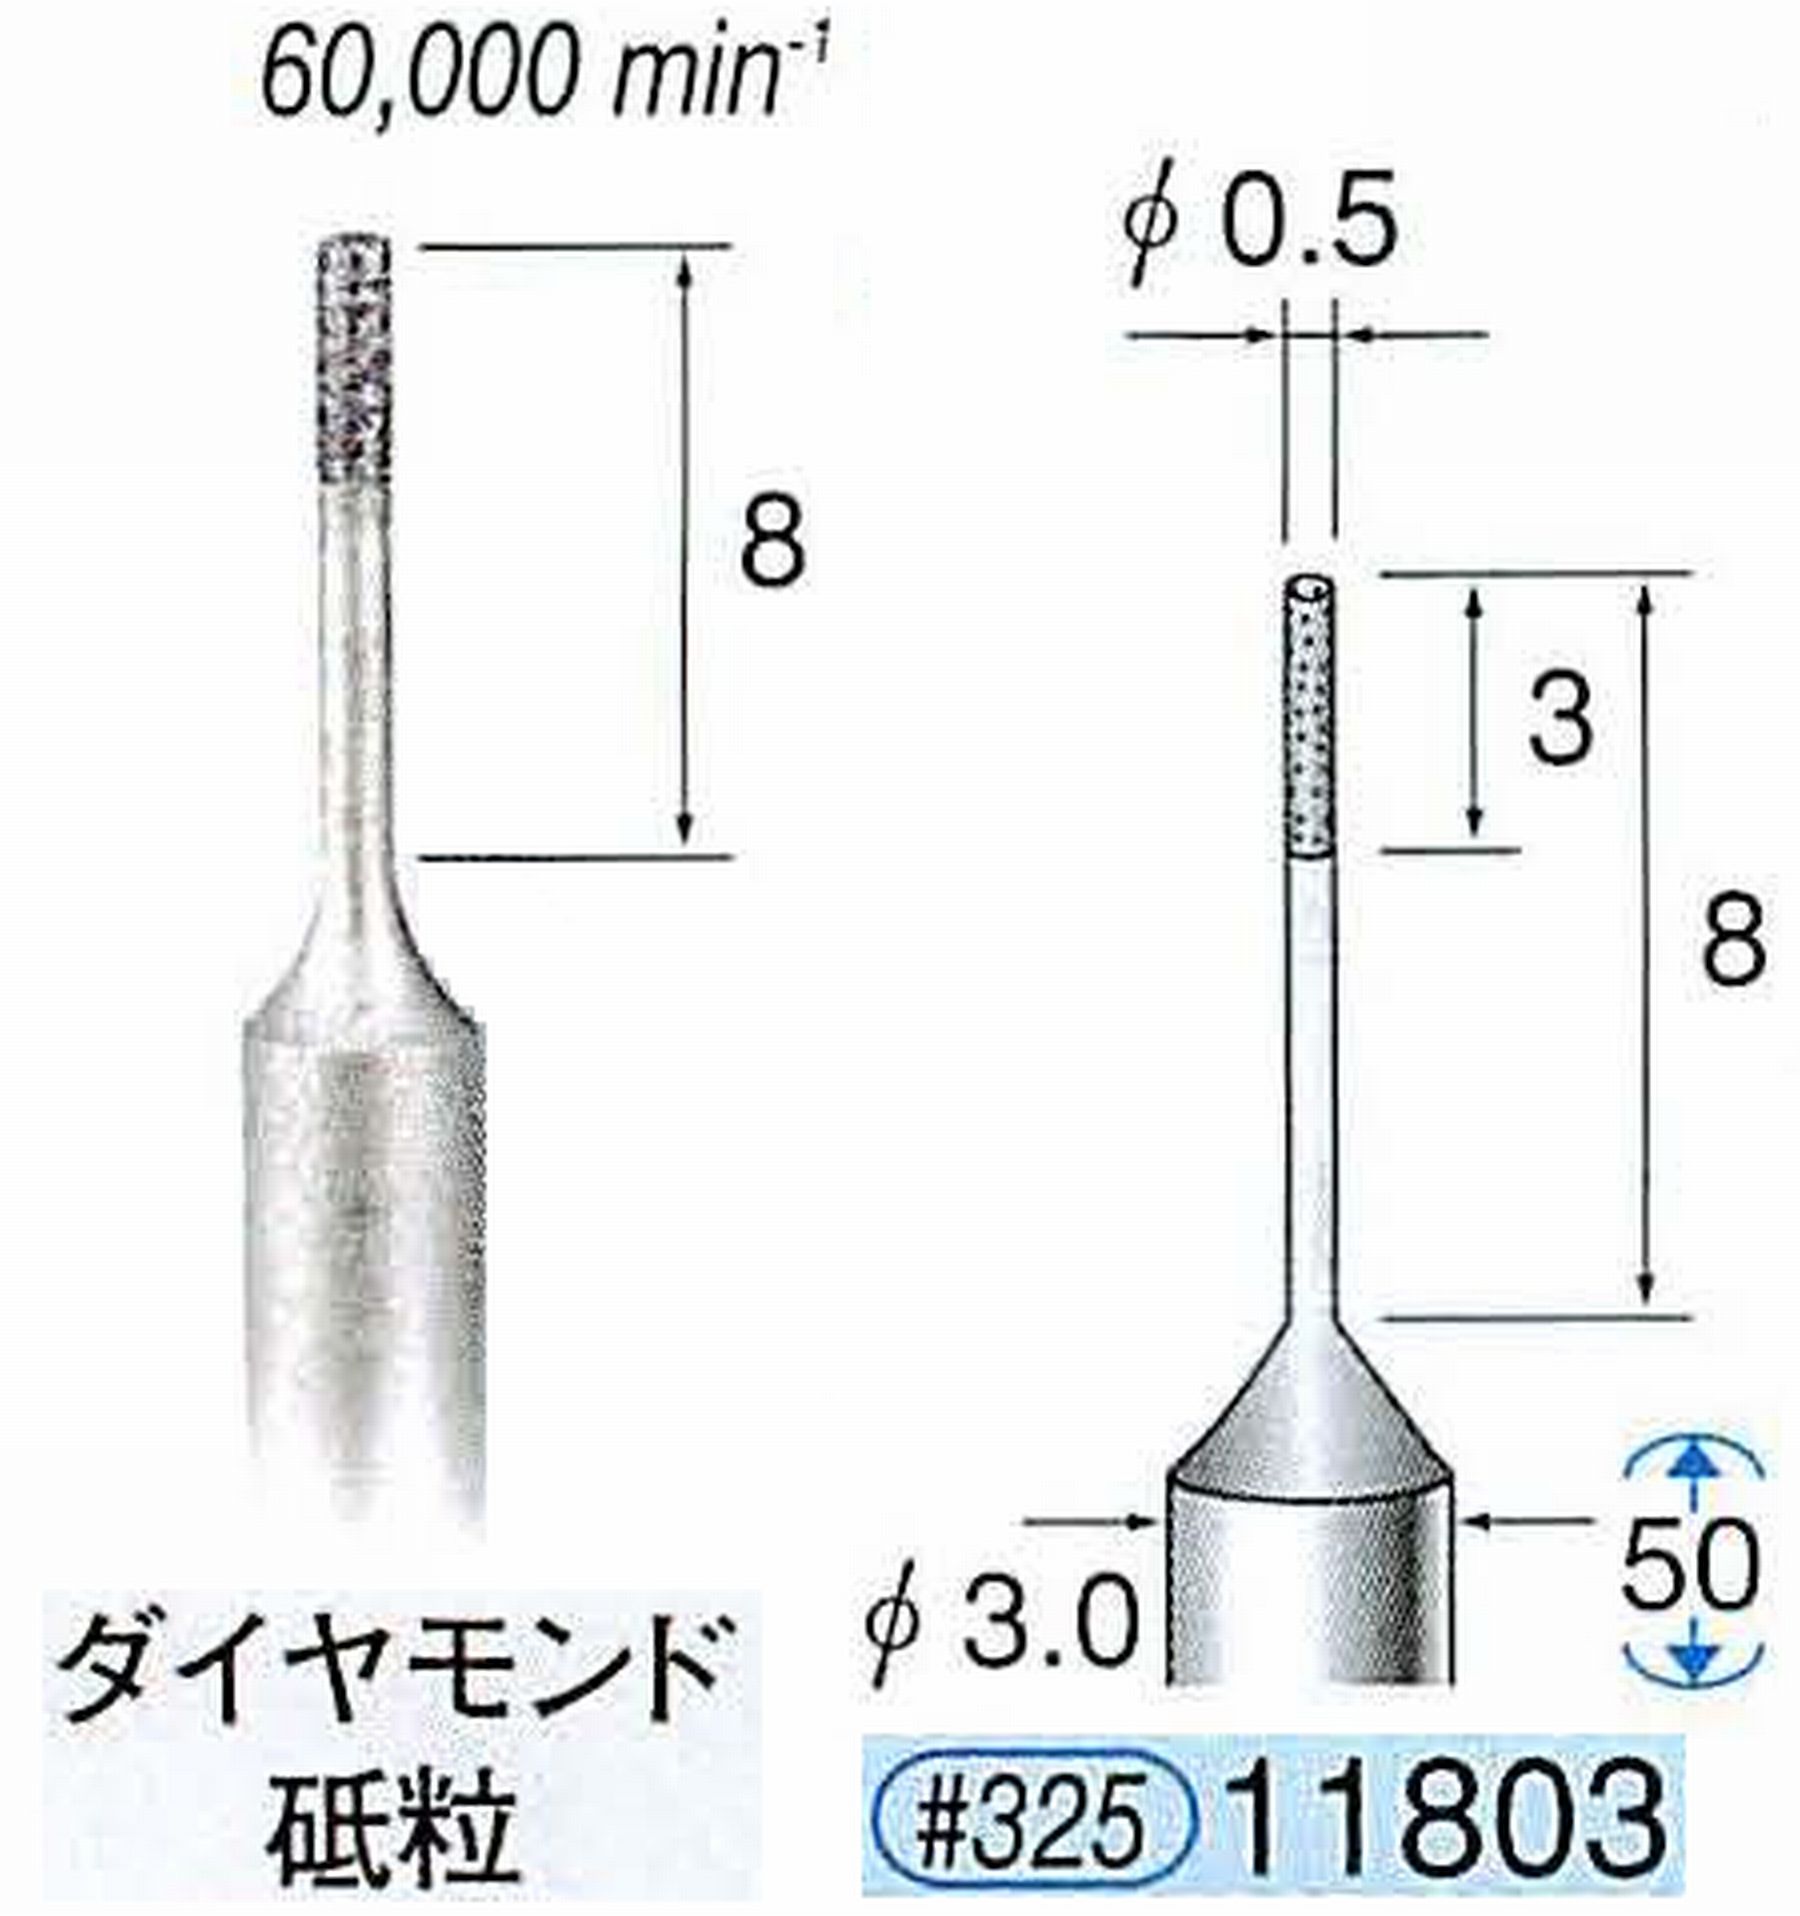 ナカニシ/NAKANISHI SP電着ダイヤモンド ダイヤモンド砥粒 軸径(シャンク)φ3.0mm 11803